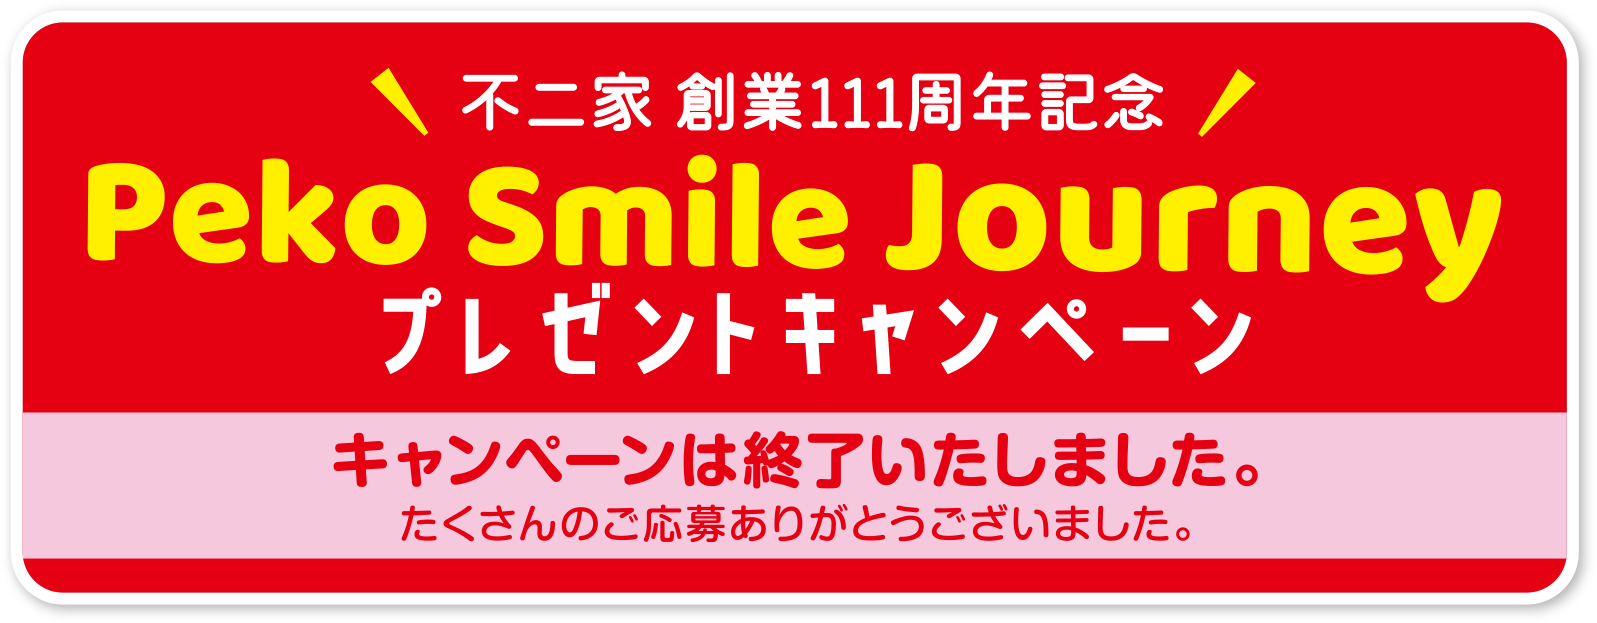 Peko Smile Journey プレゼントキャンペーン キャンペーンは終了いたしました。